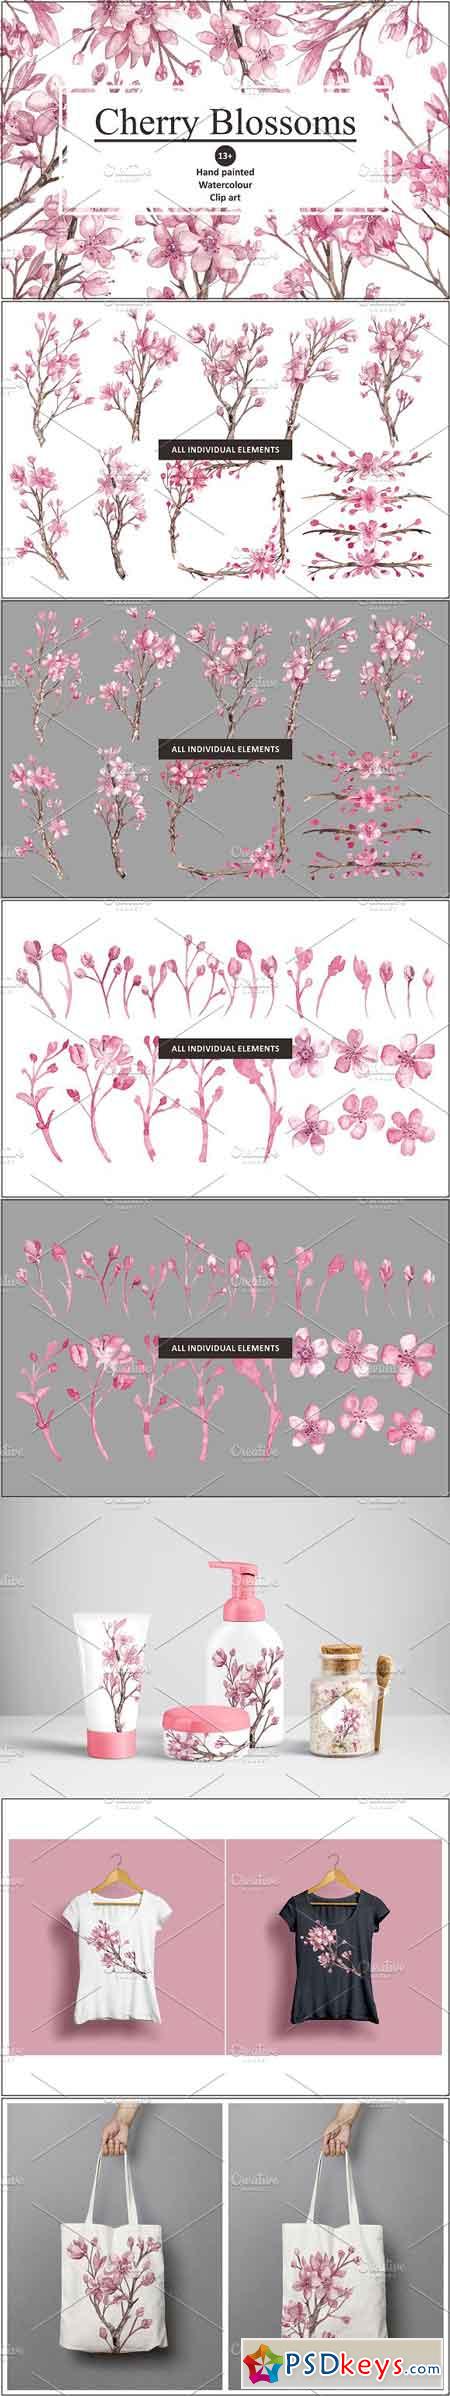 Cherry Blossom Watercolour clipart 1143306